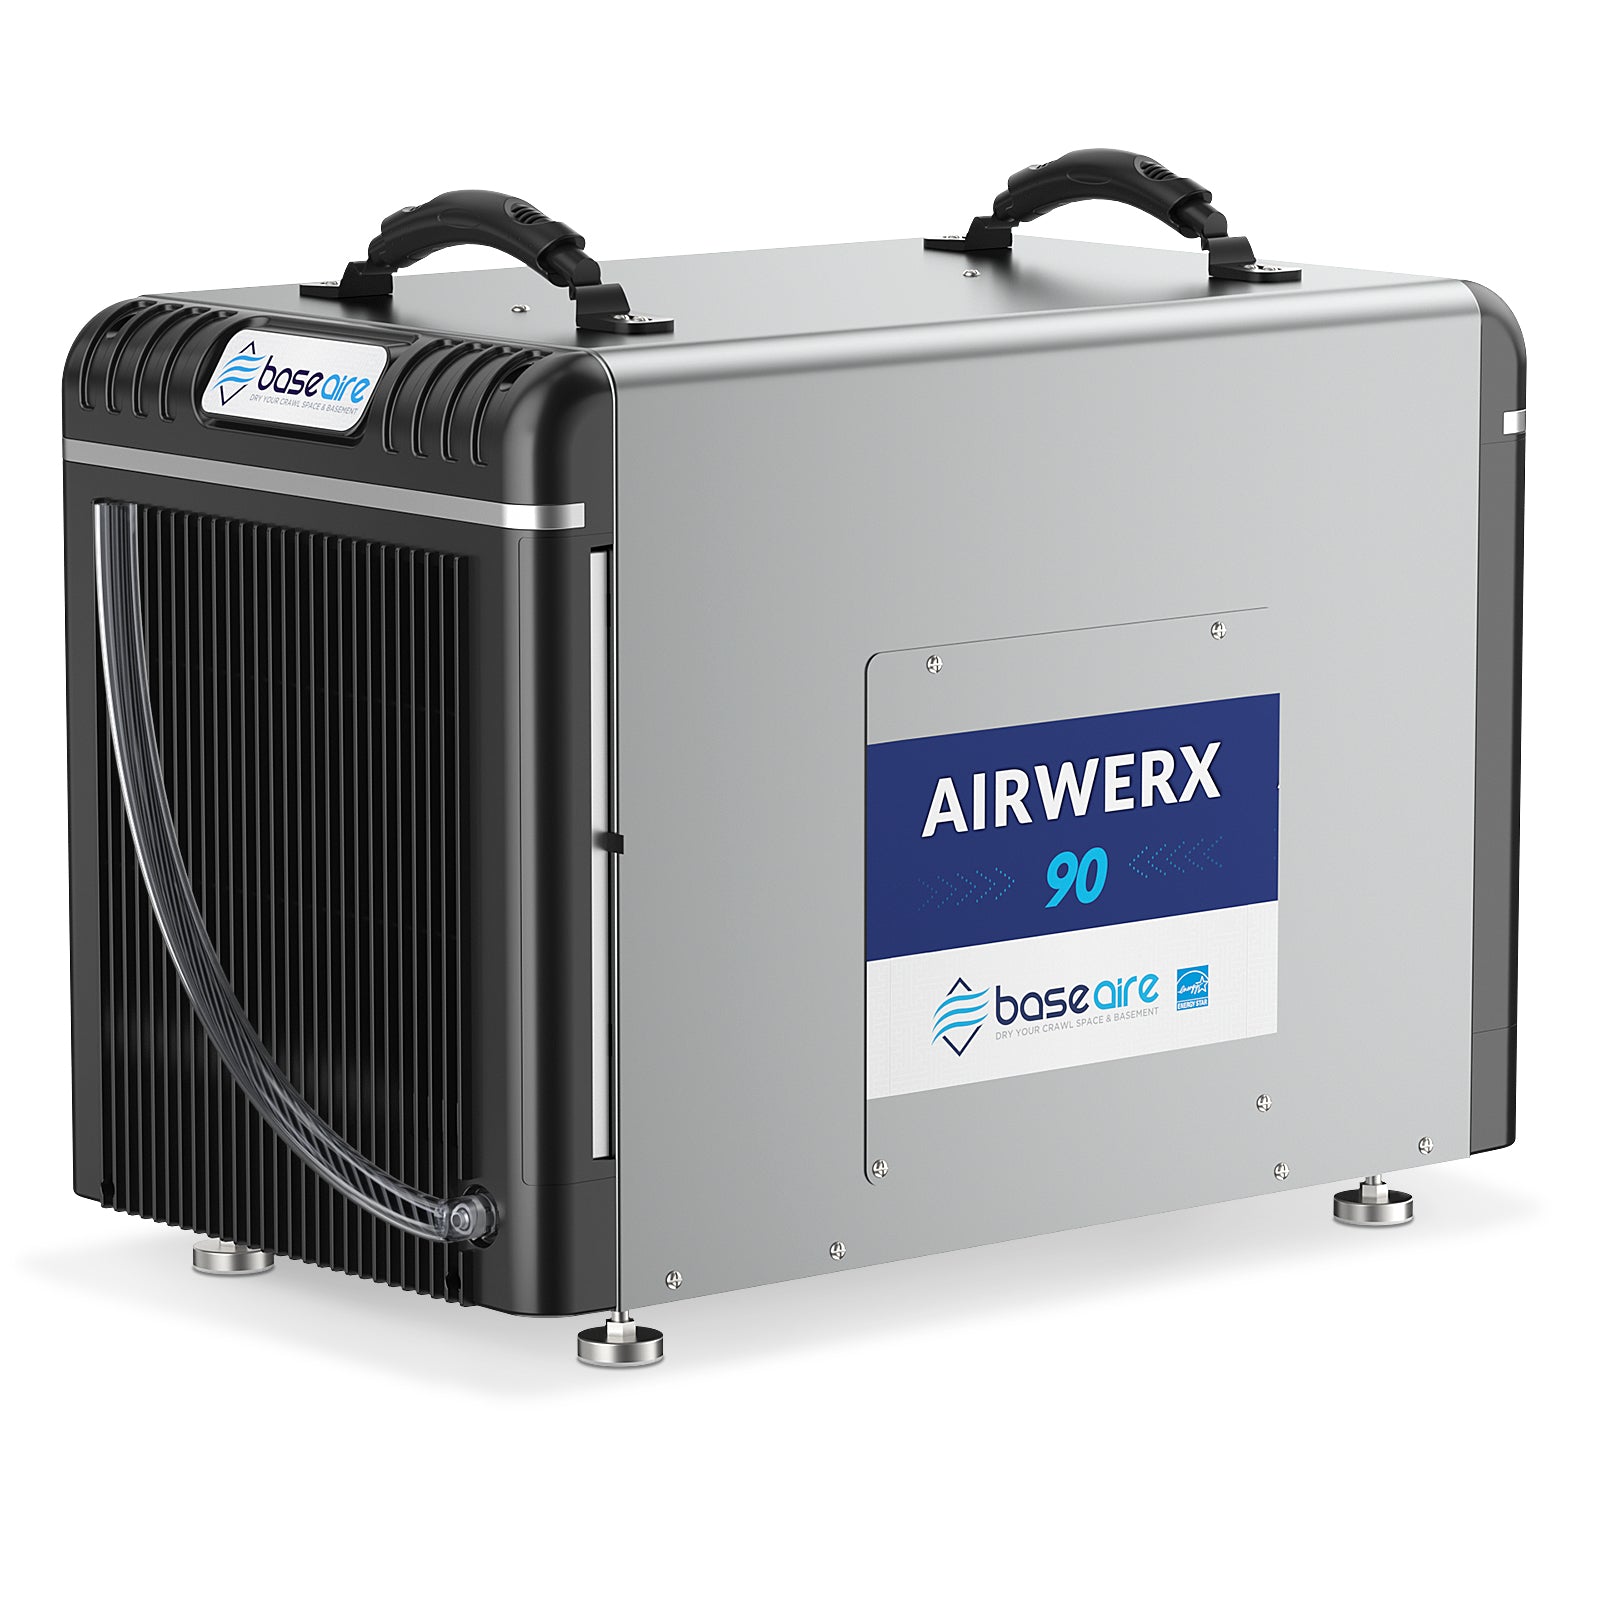 BaseAire® AirWerx 90 Dehumidifier